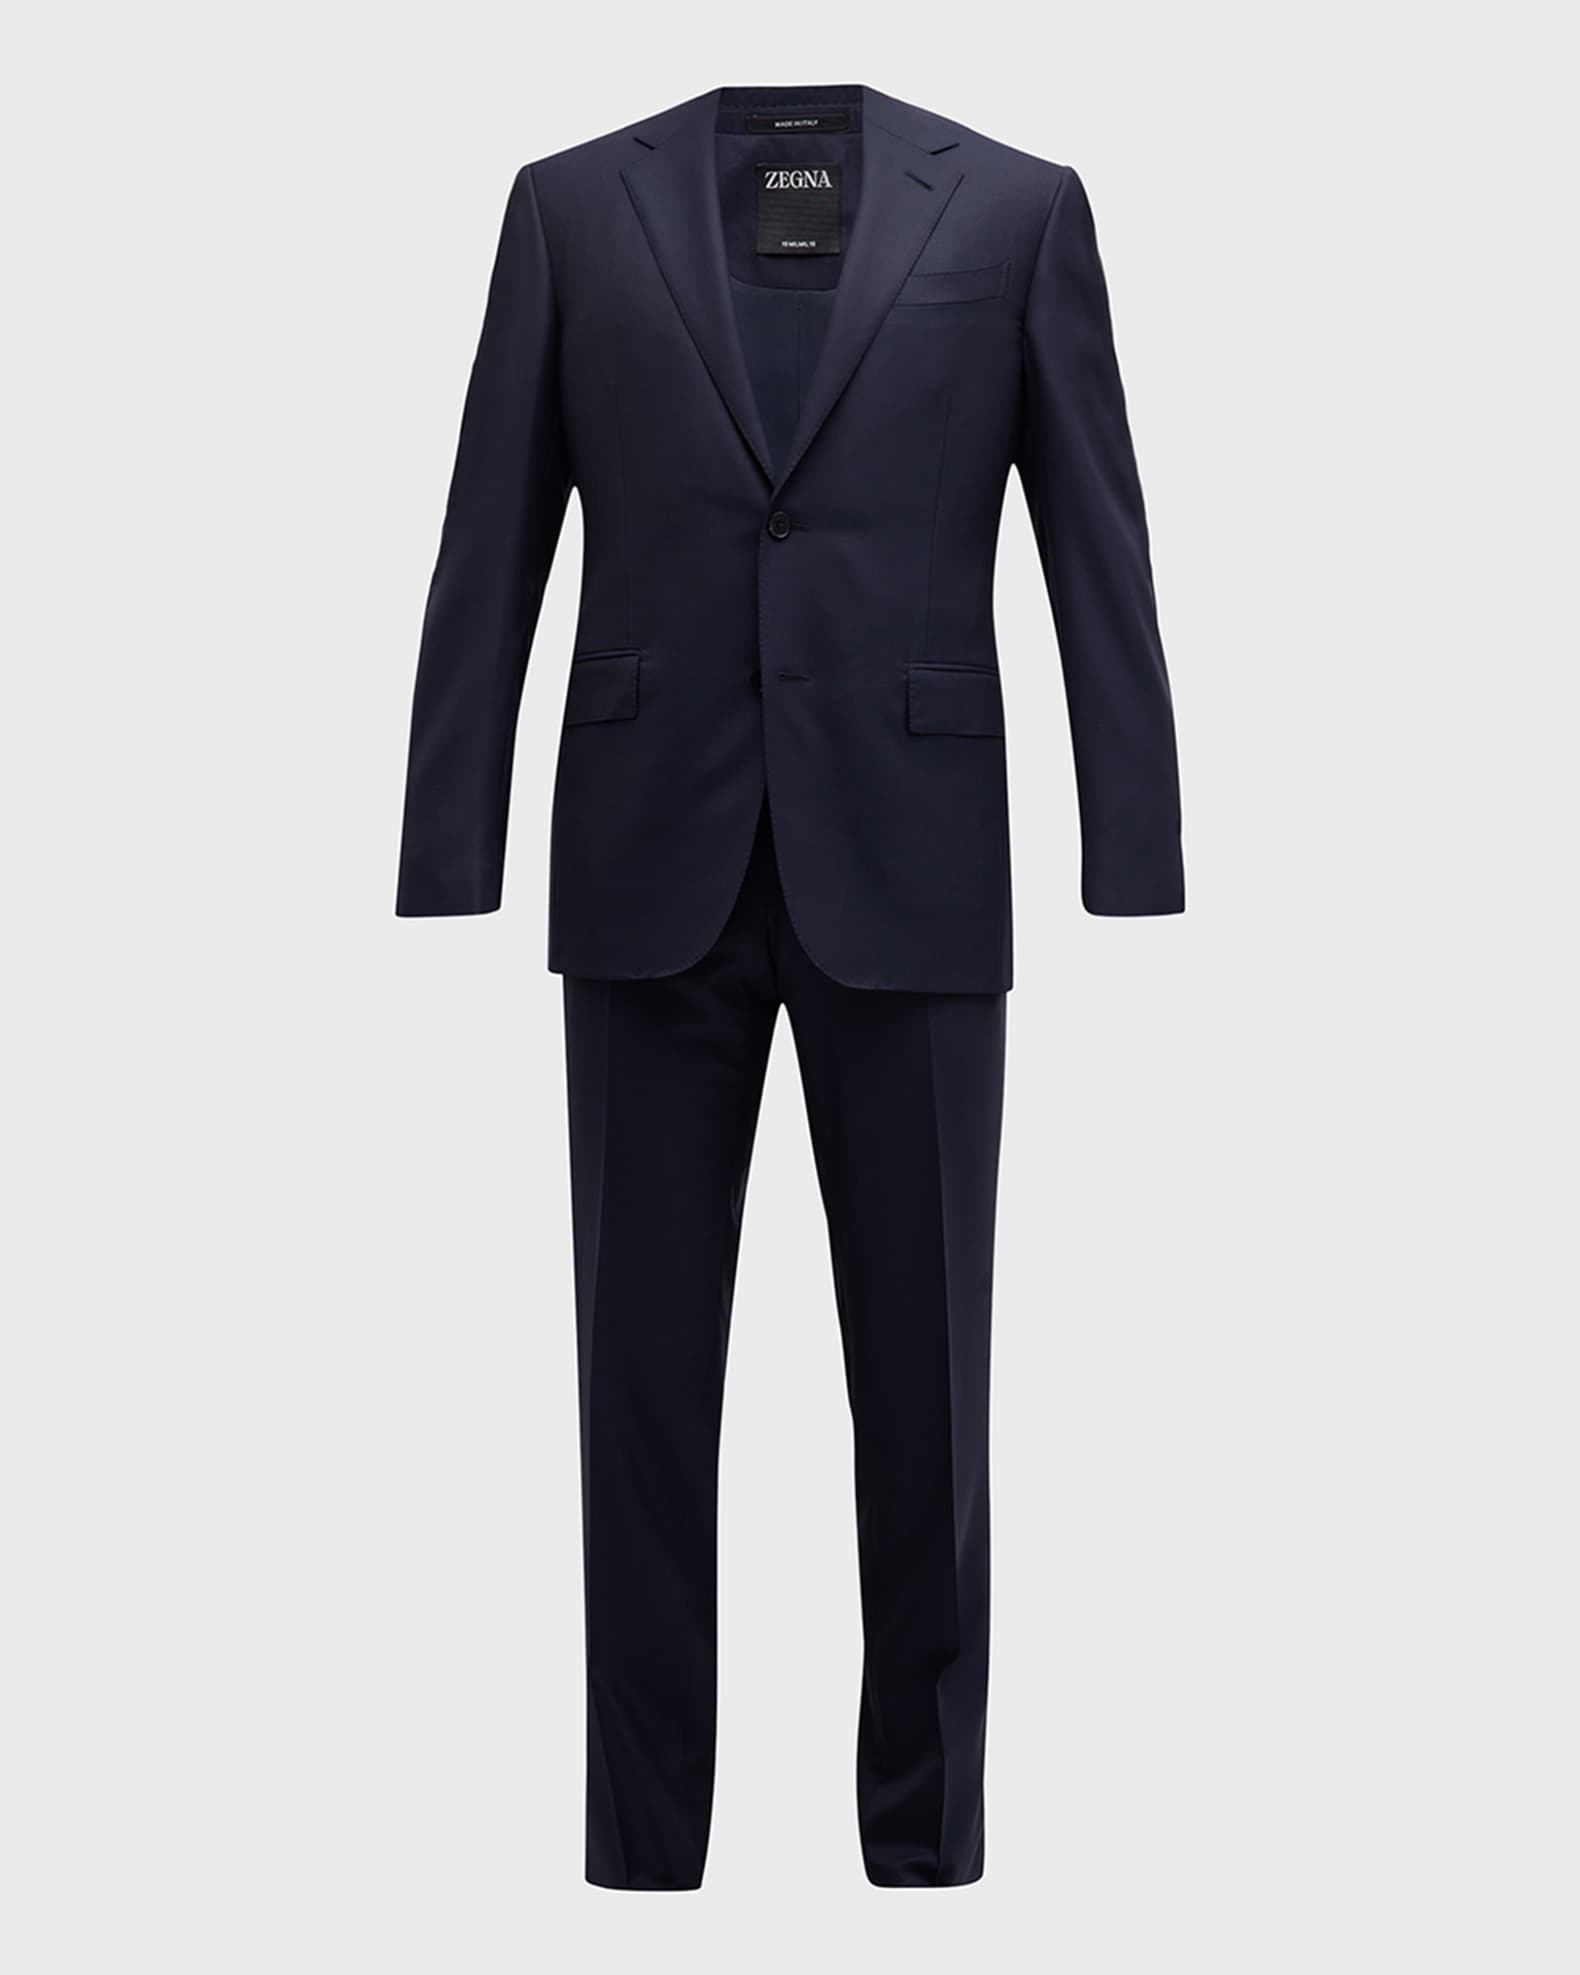 ZEGNA Men's 15milmil15 Micro-Check Wool Suit | Neiman Marcus